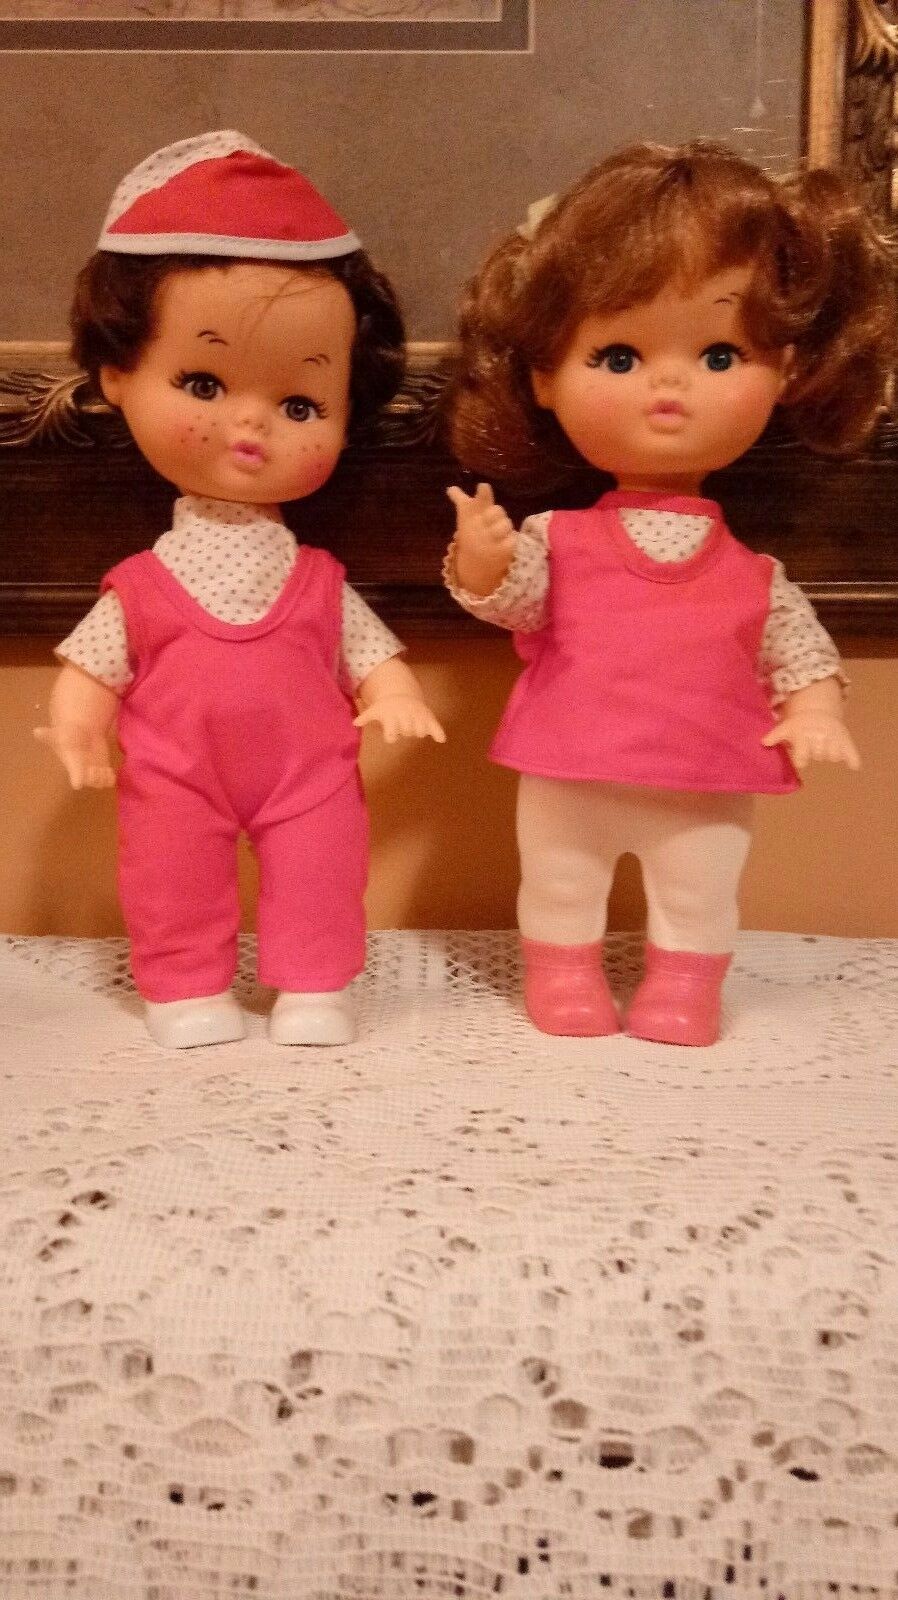 Siblings Vintage Rubber Dolls